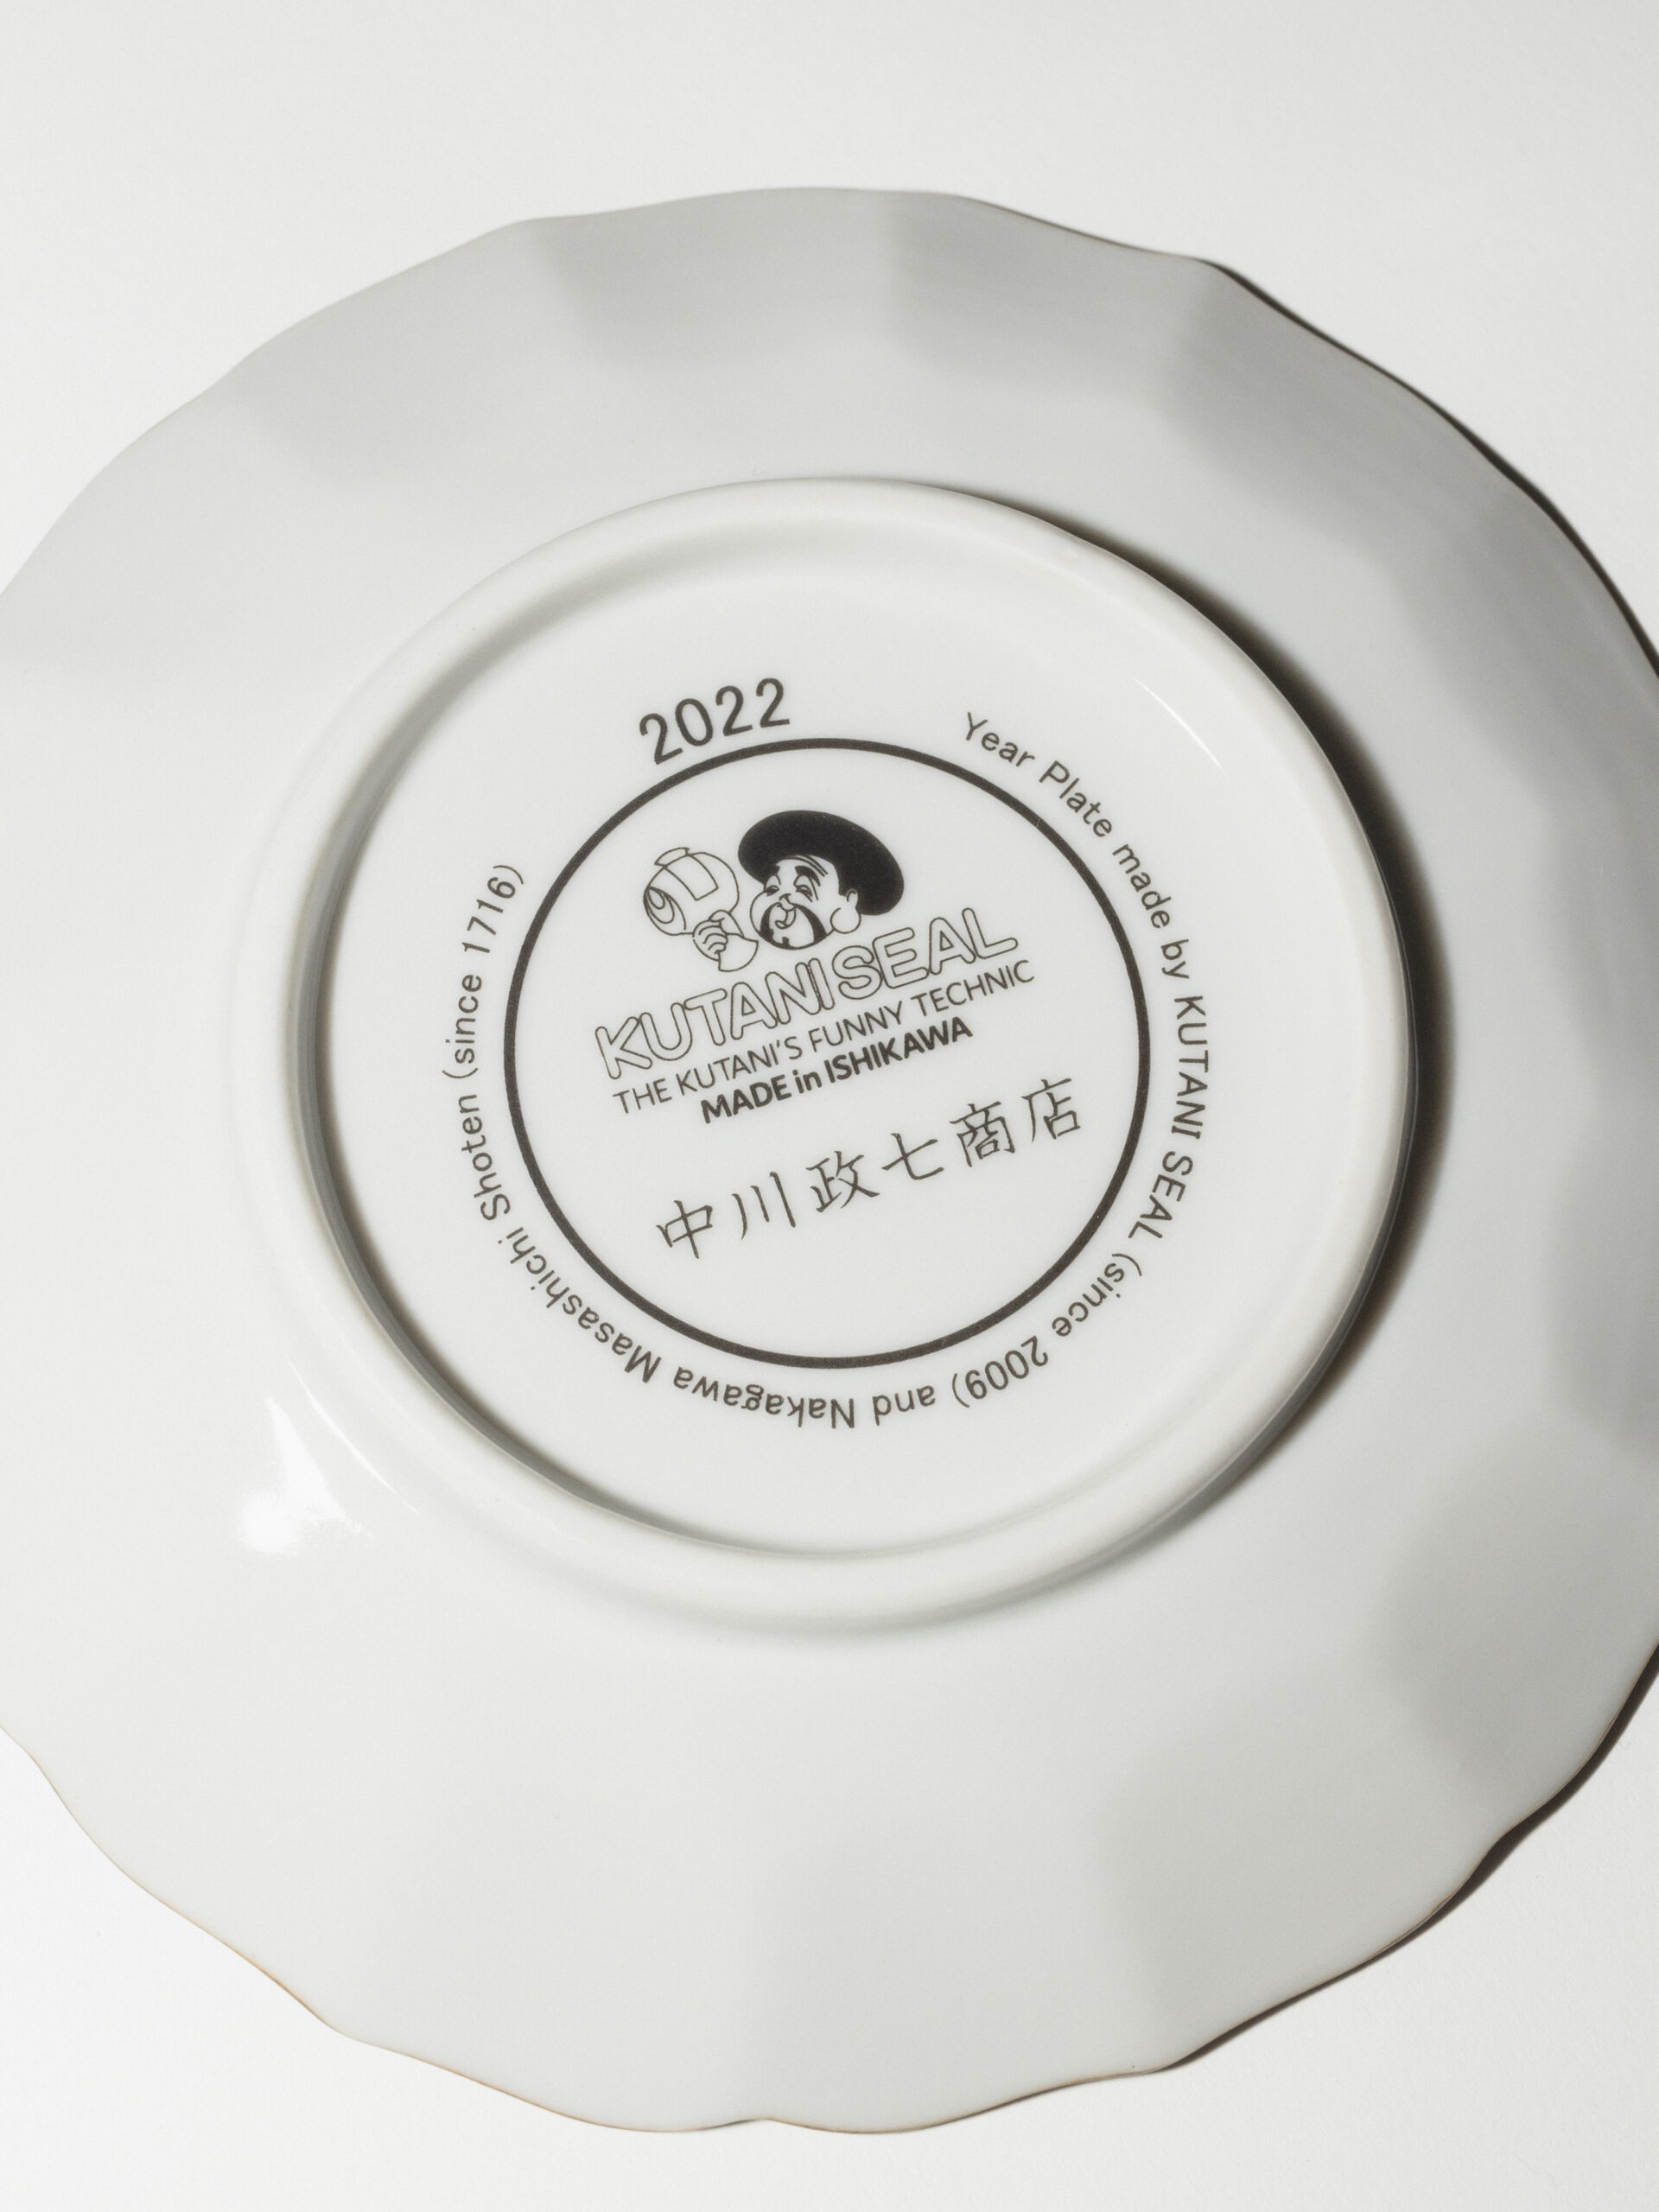 「中川政七商店」のKUTANI SEAL ボンボニエール 寅 ¥4,950、KUTANI SEAL 干支皿 寅 ¥3,080